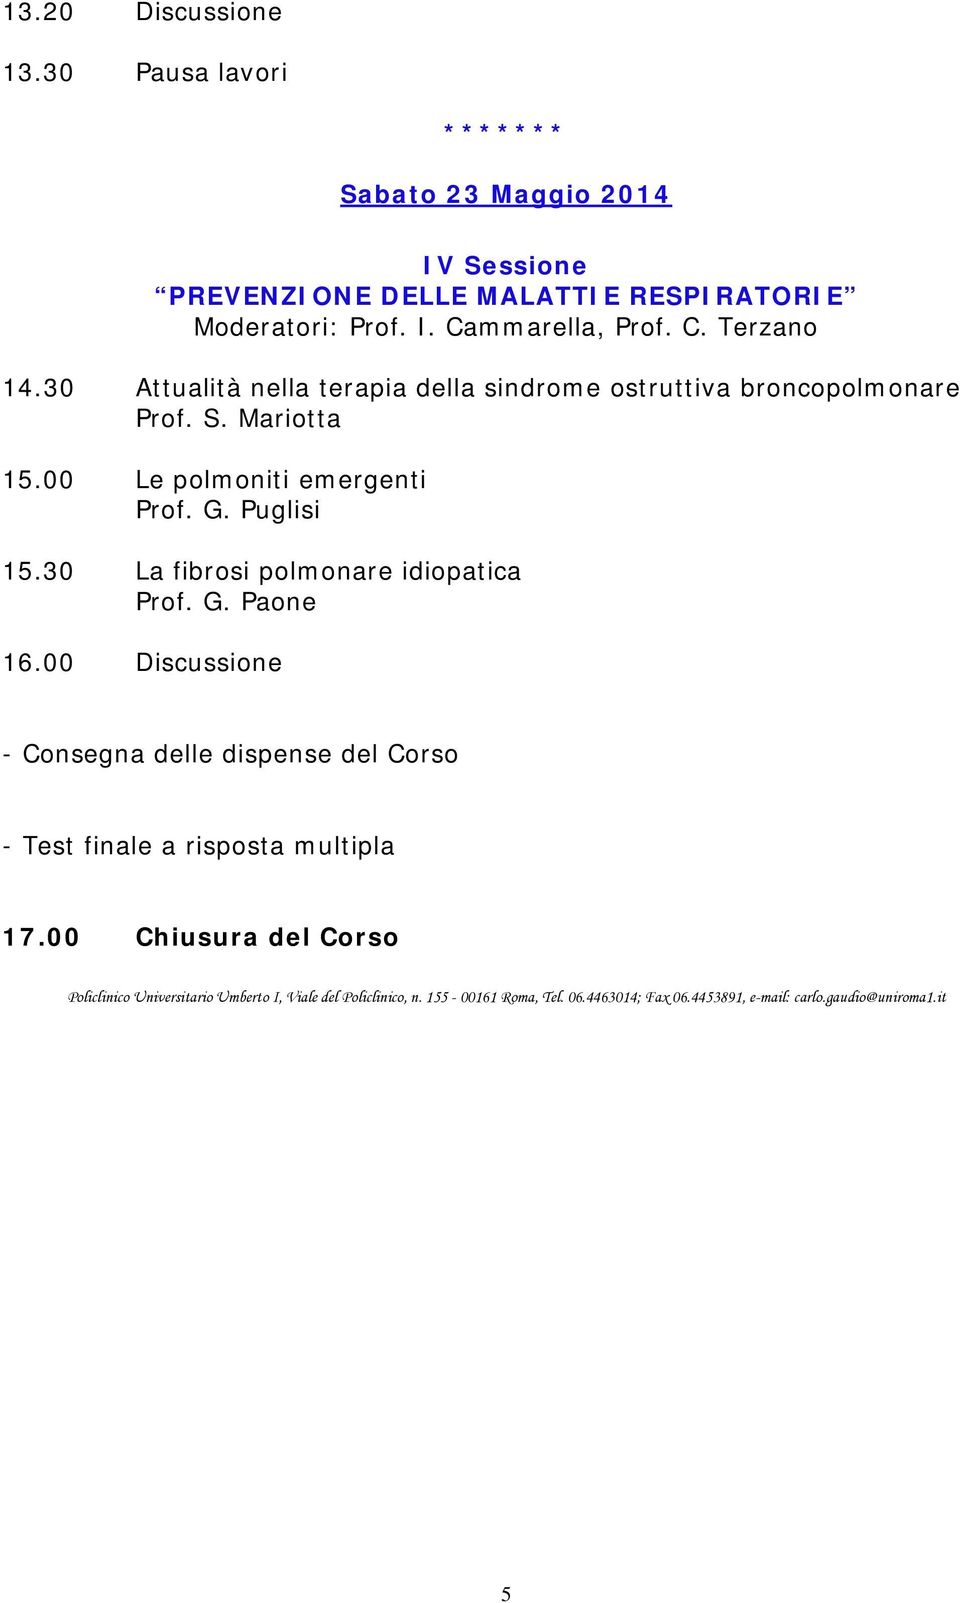 30 La fibrosi polmonare idiopatica Prof. G. Paone 16.00 Discussione - Consegna delle dispense del Corso - Test finale a risposta multipla 17.